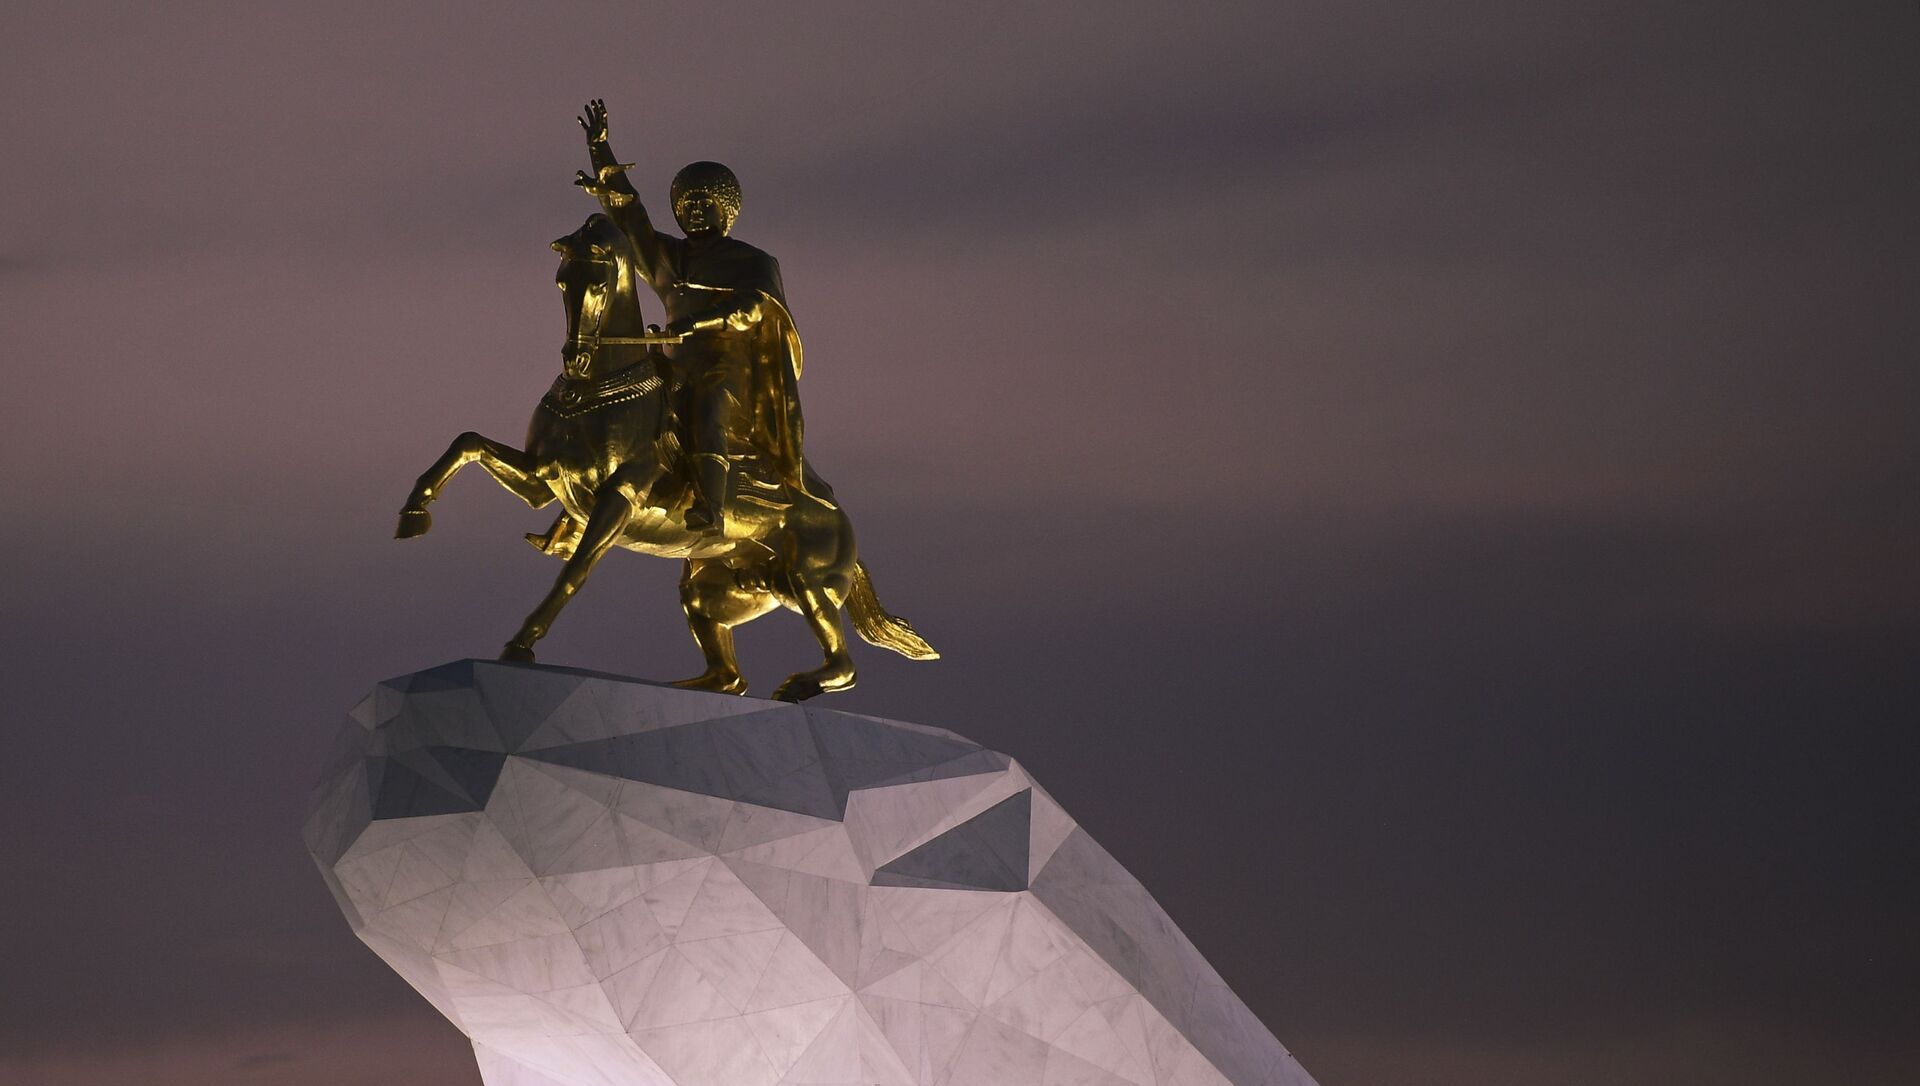 Памятник второму президенту Туркменистана Гурбангулы Бердымухамедову  Аркадаг в Ашхабаде - Sputnik Узбекистан, 1920, 28.02.2021